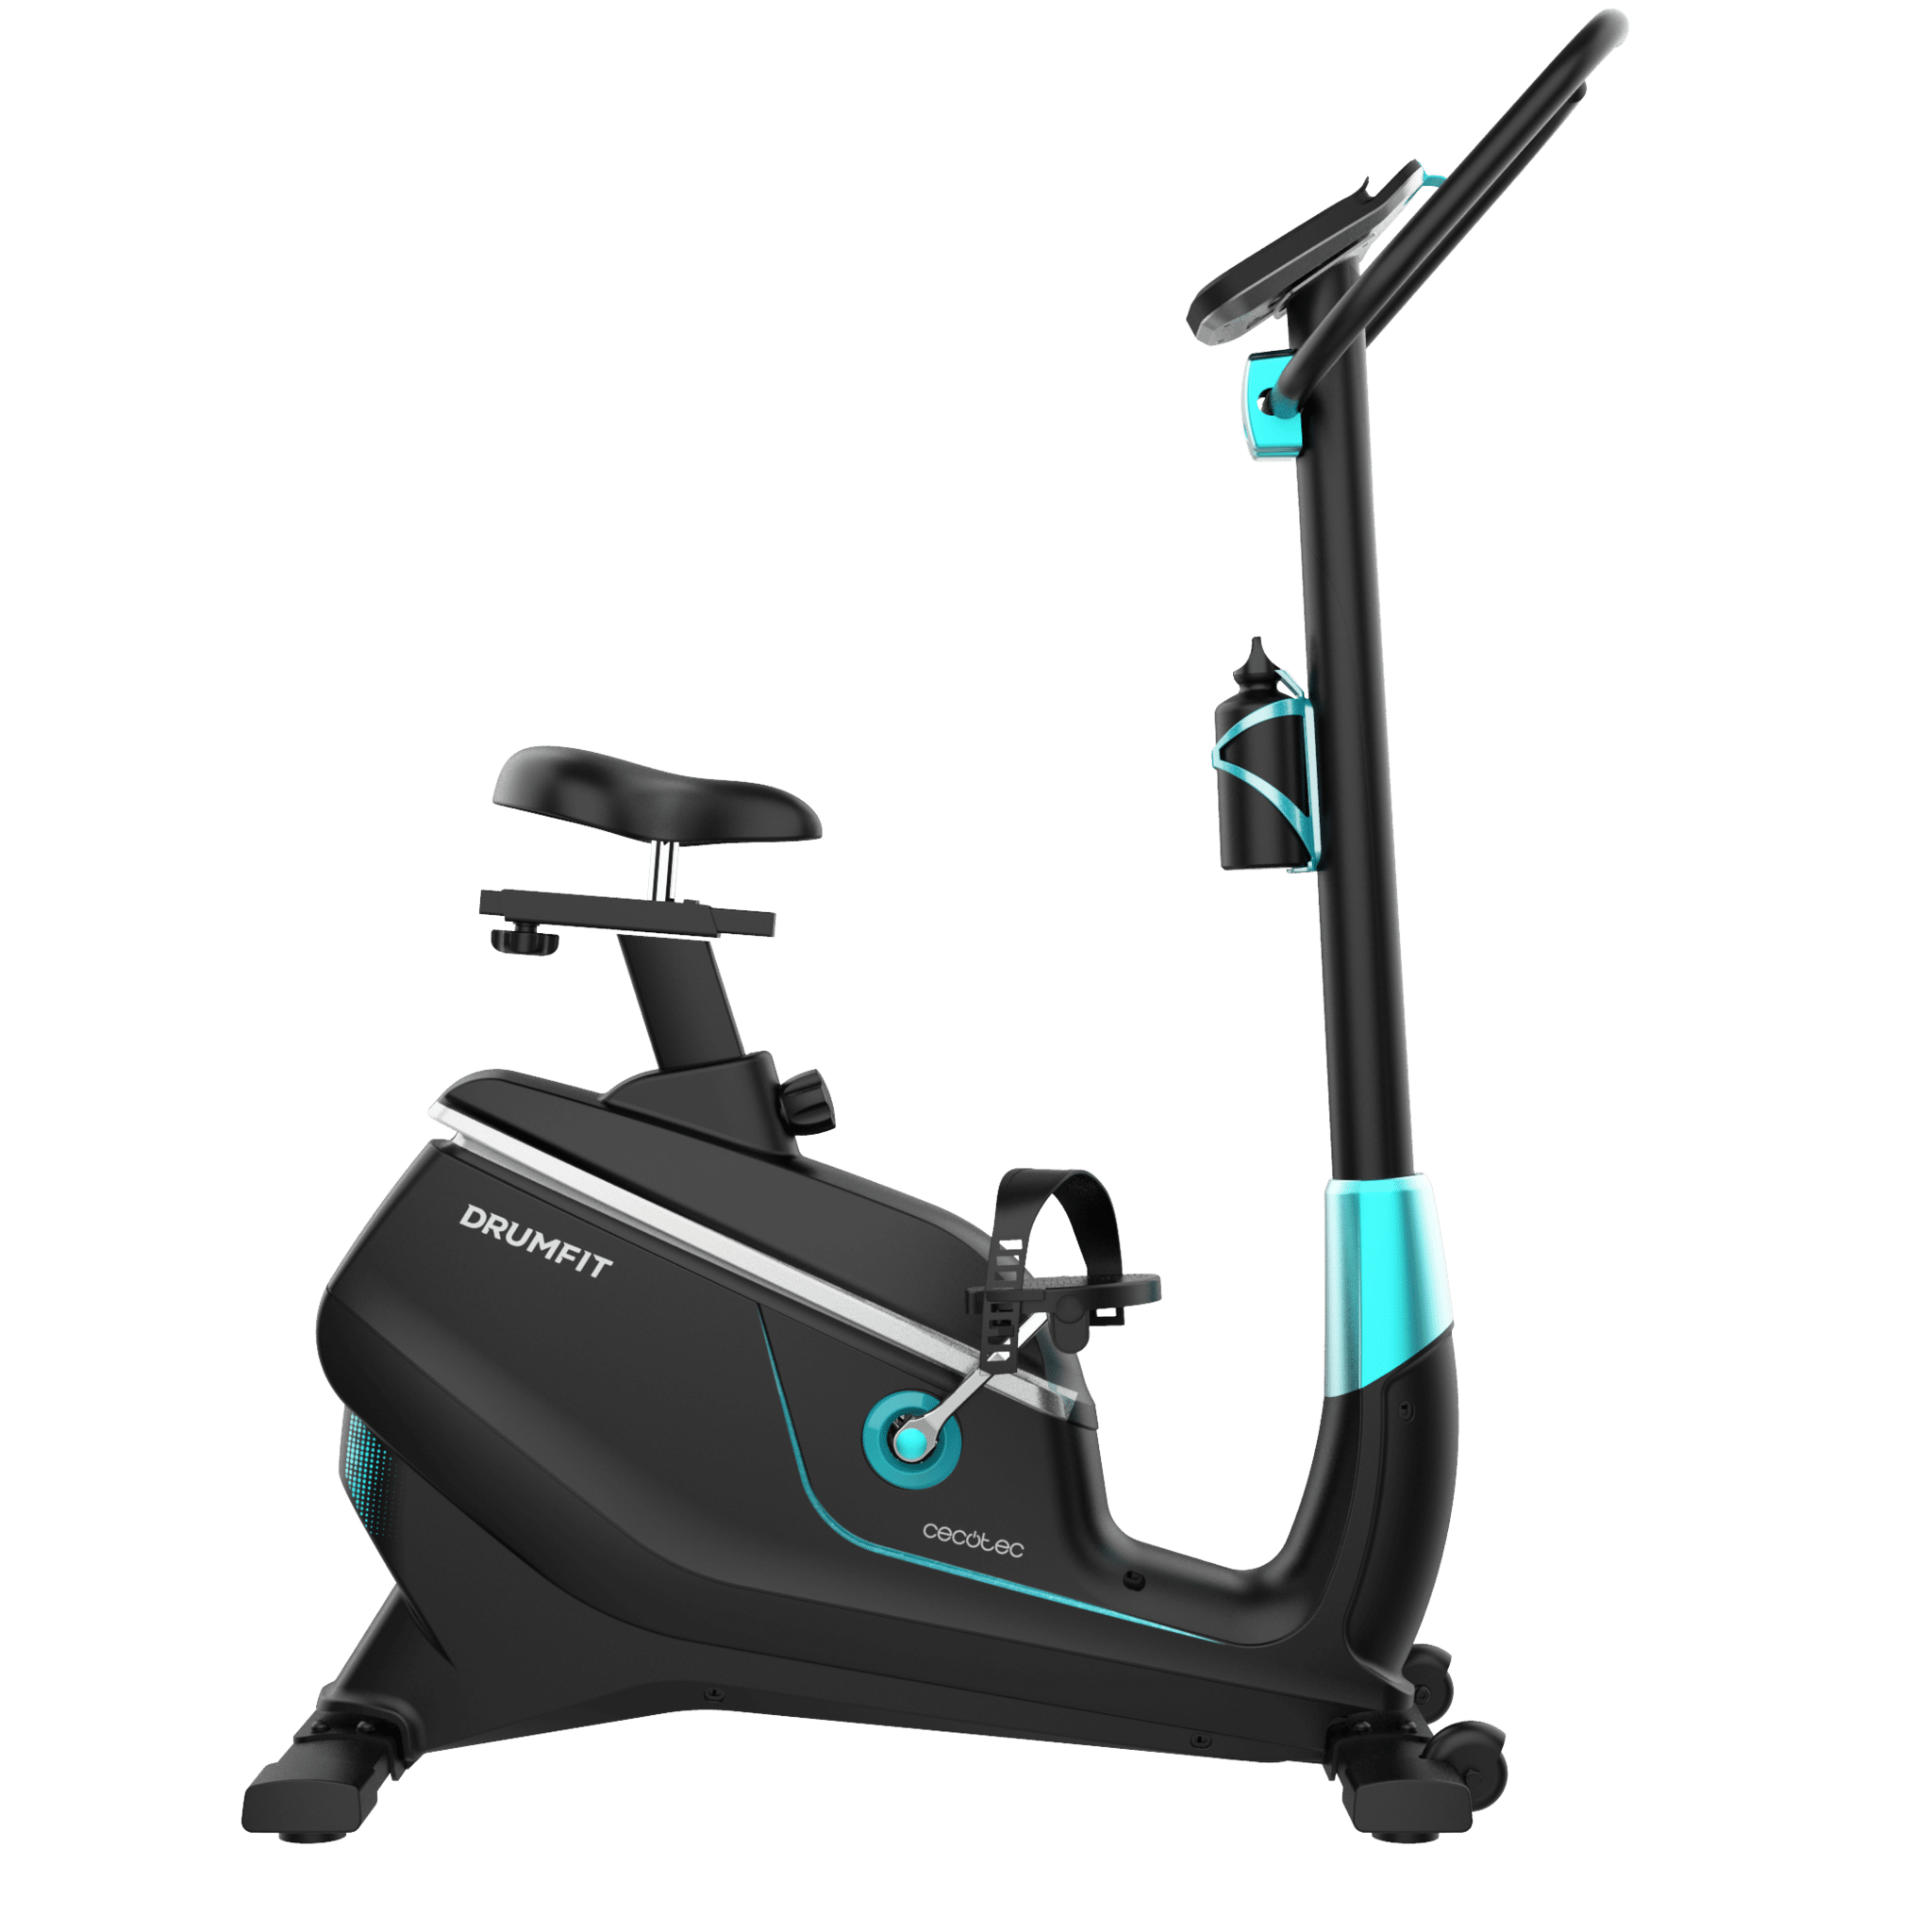 Cyclette DrumFit Cycle 9000 Talos Pro. Resistenza magnetica regolabile con motore, manubrio con sensore di frequenza cardiaca, sella regolabile, supporto per dispositivo, ruote